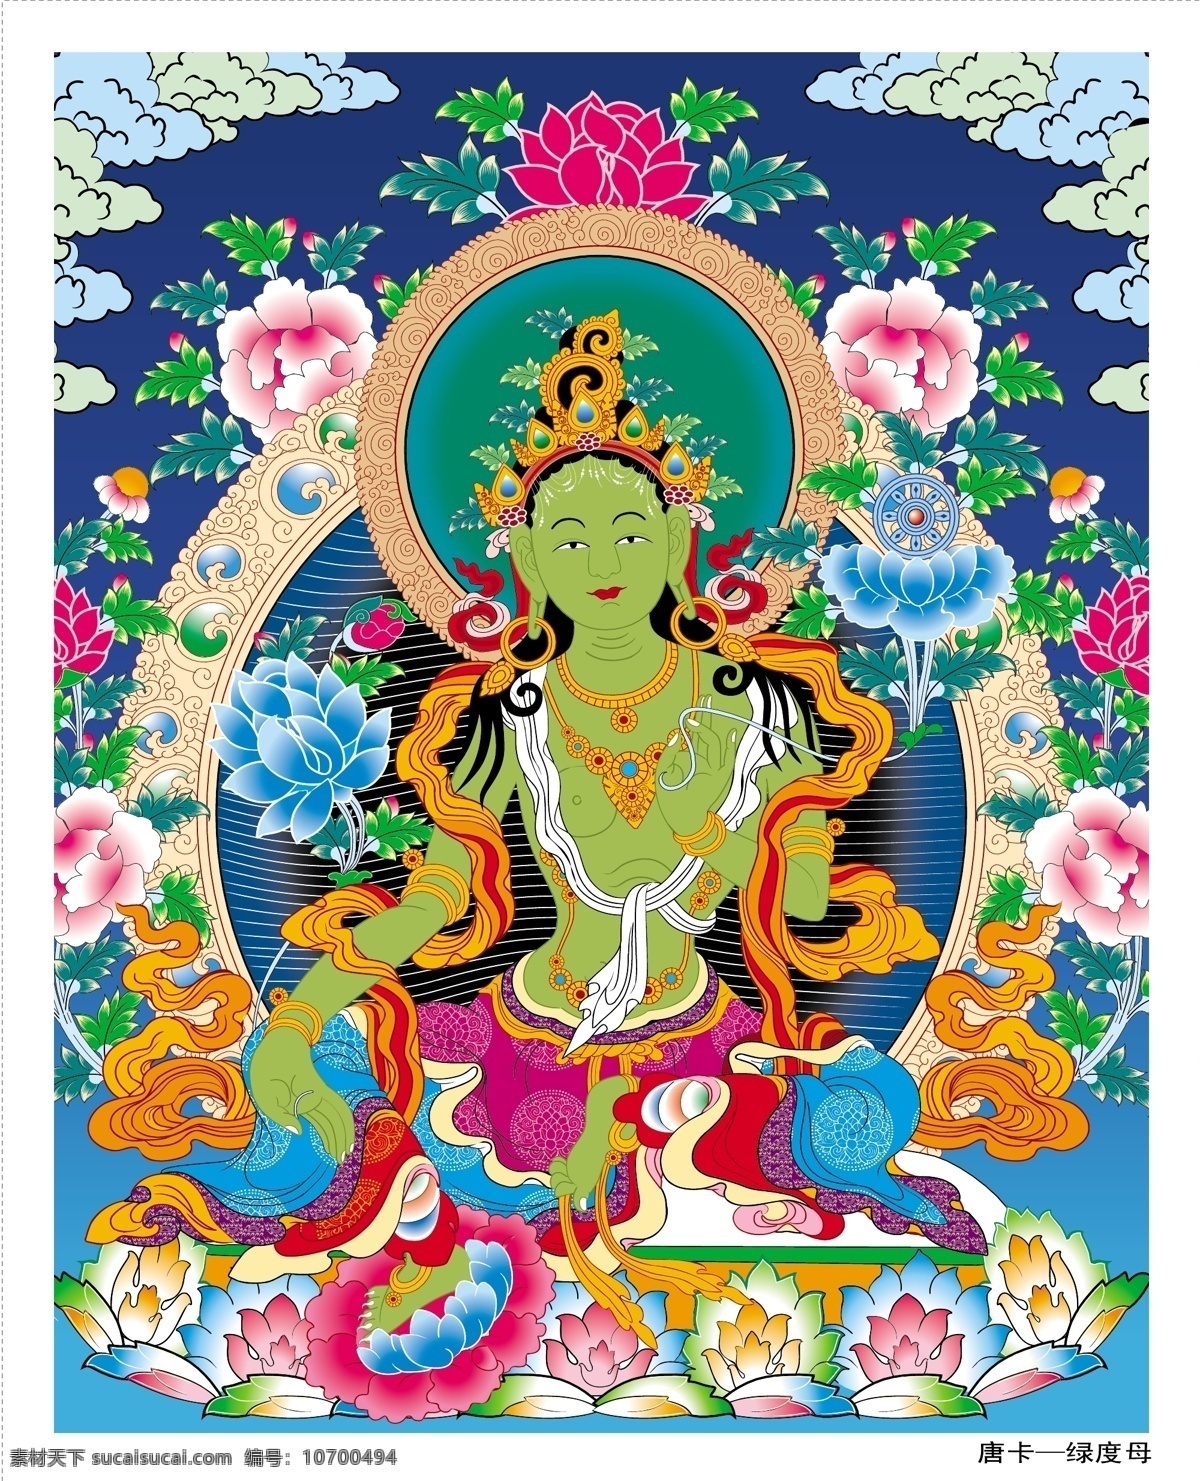 唐卡 法律 主体 金刚 持 向量 收费站 不 转 敦煌 佛 佛教 宗教 绿度母 轰二 宁玛派 藏语 矢量图 其他矢量图